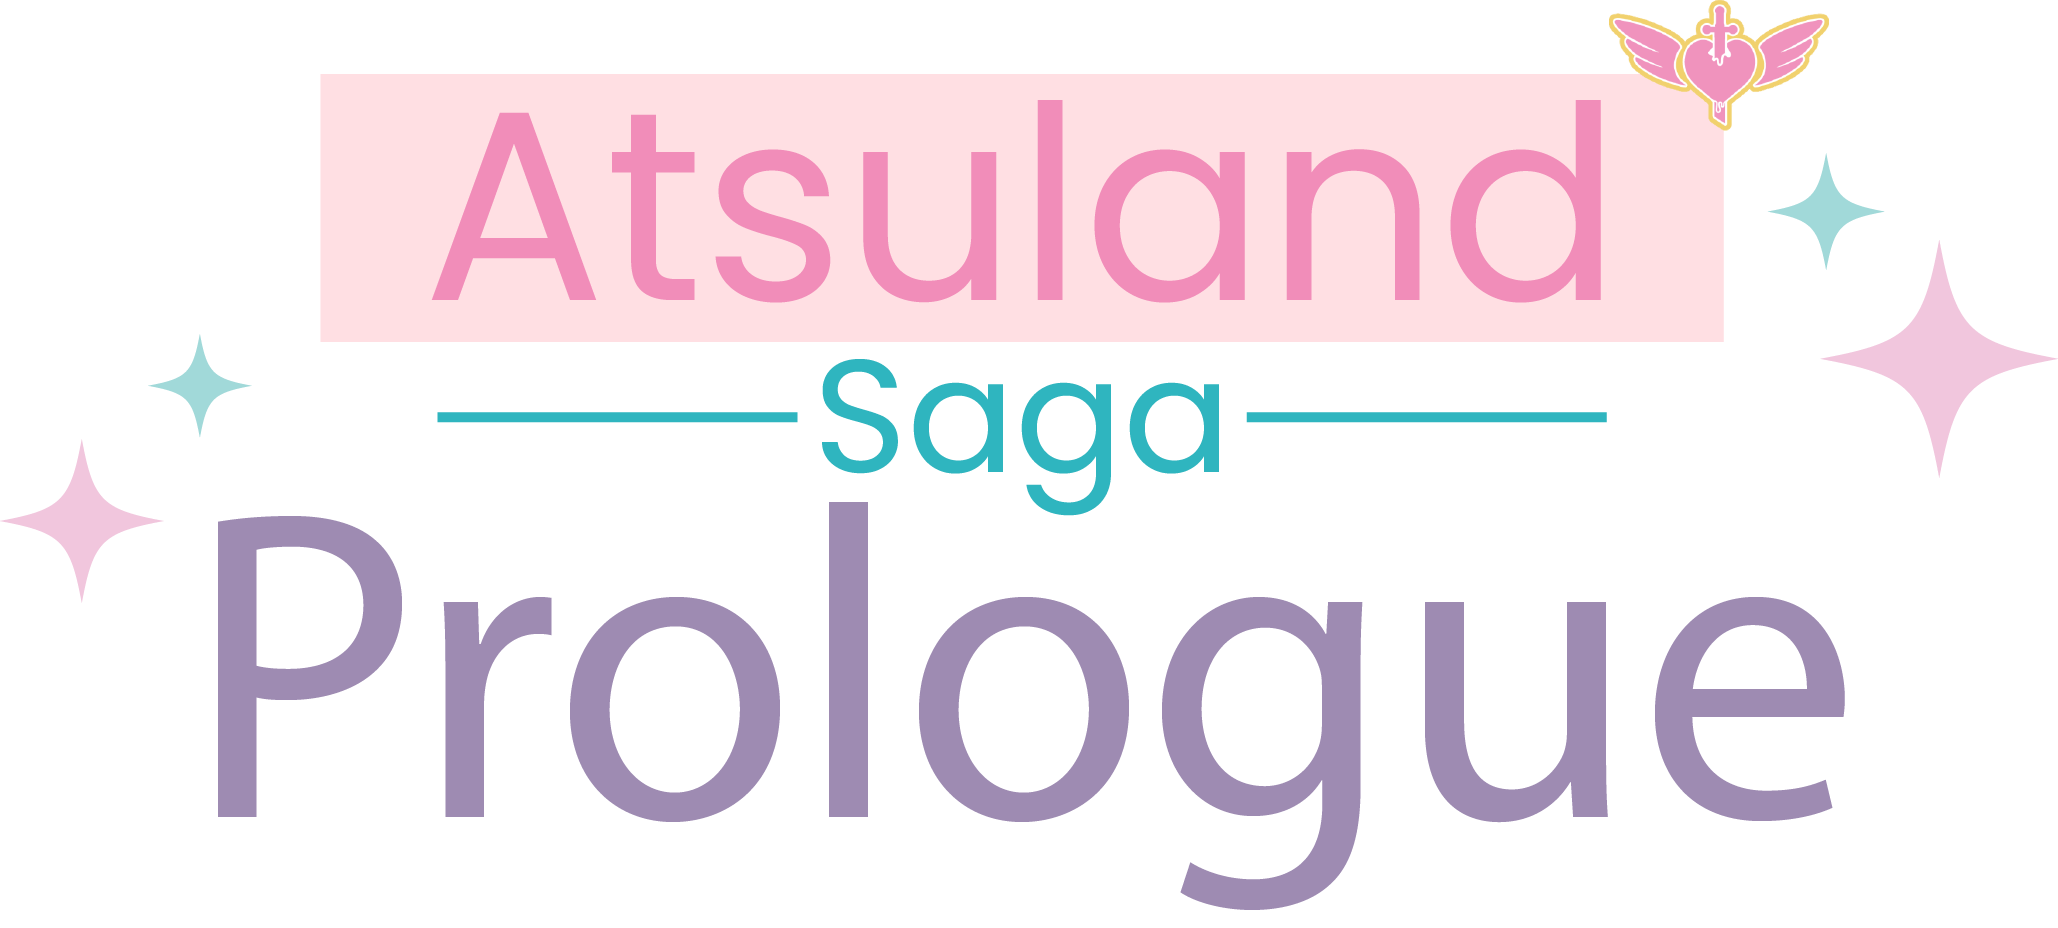 Atsuland Saga Comic Logo